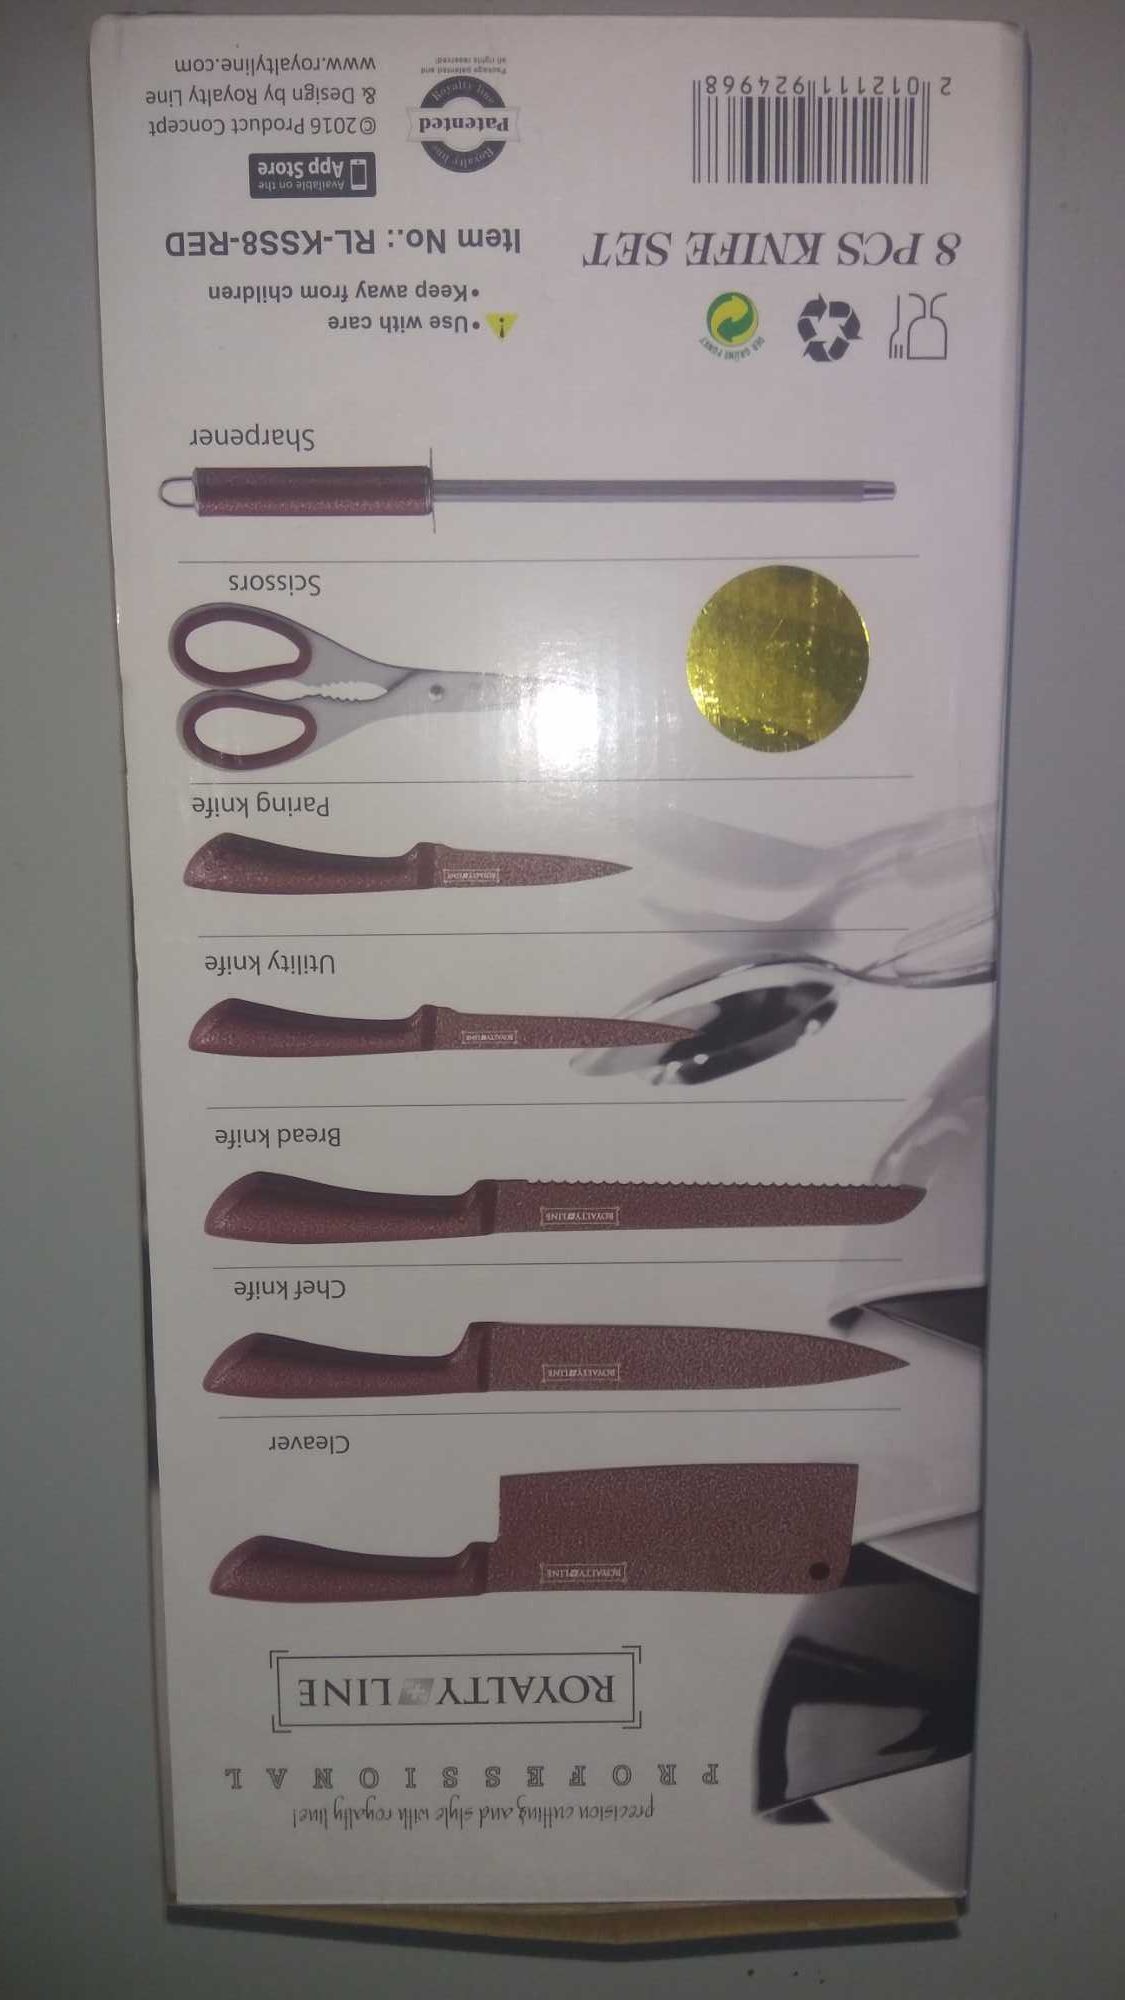 Набір кухонних ножів Royalty Line з підставкою 8 предметів Швейцарія